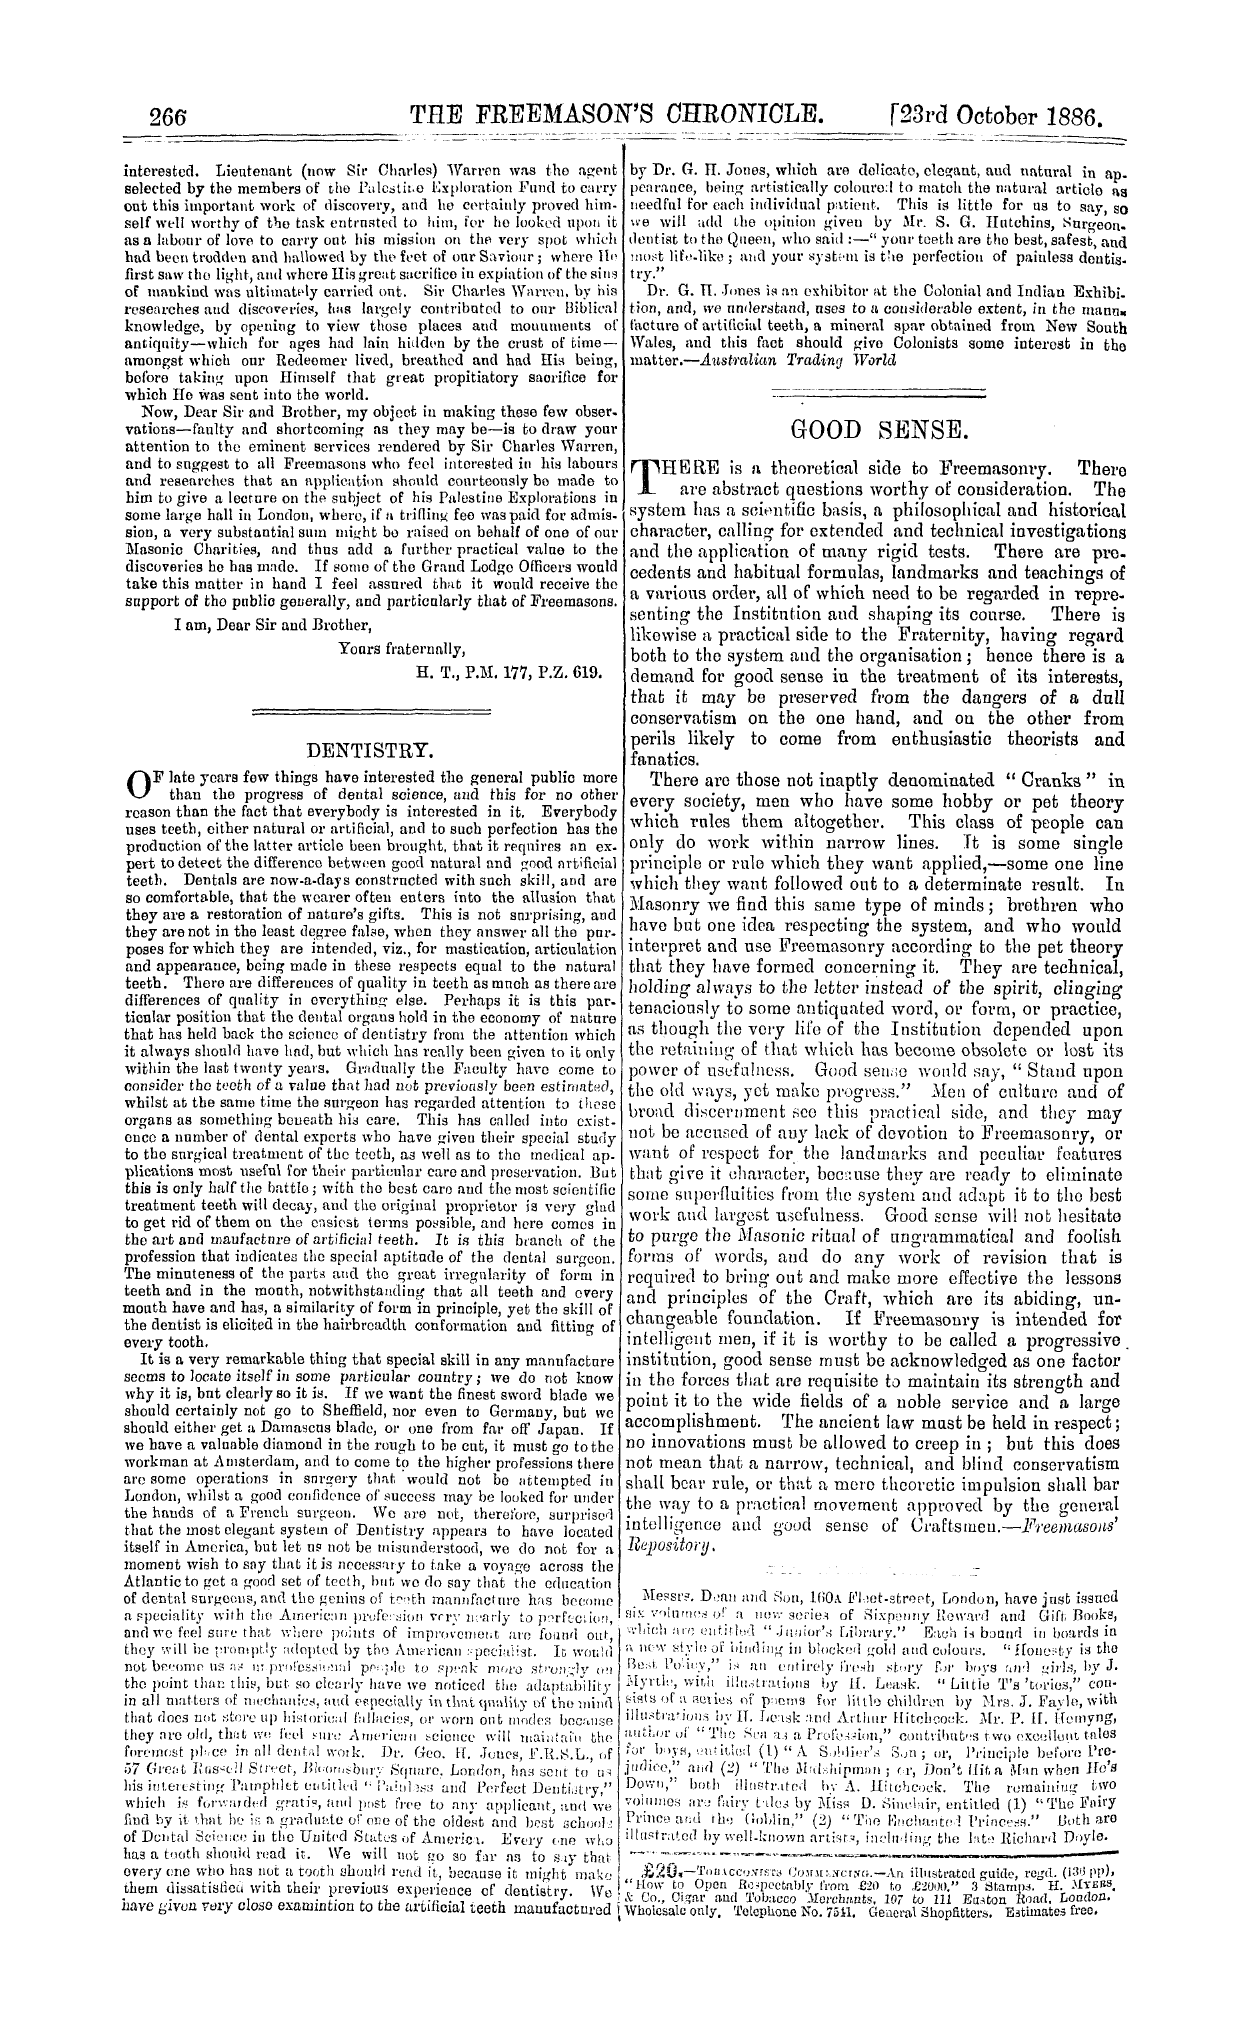 The Freemason's Chronicle: 1886-10-23 - Dentistry.